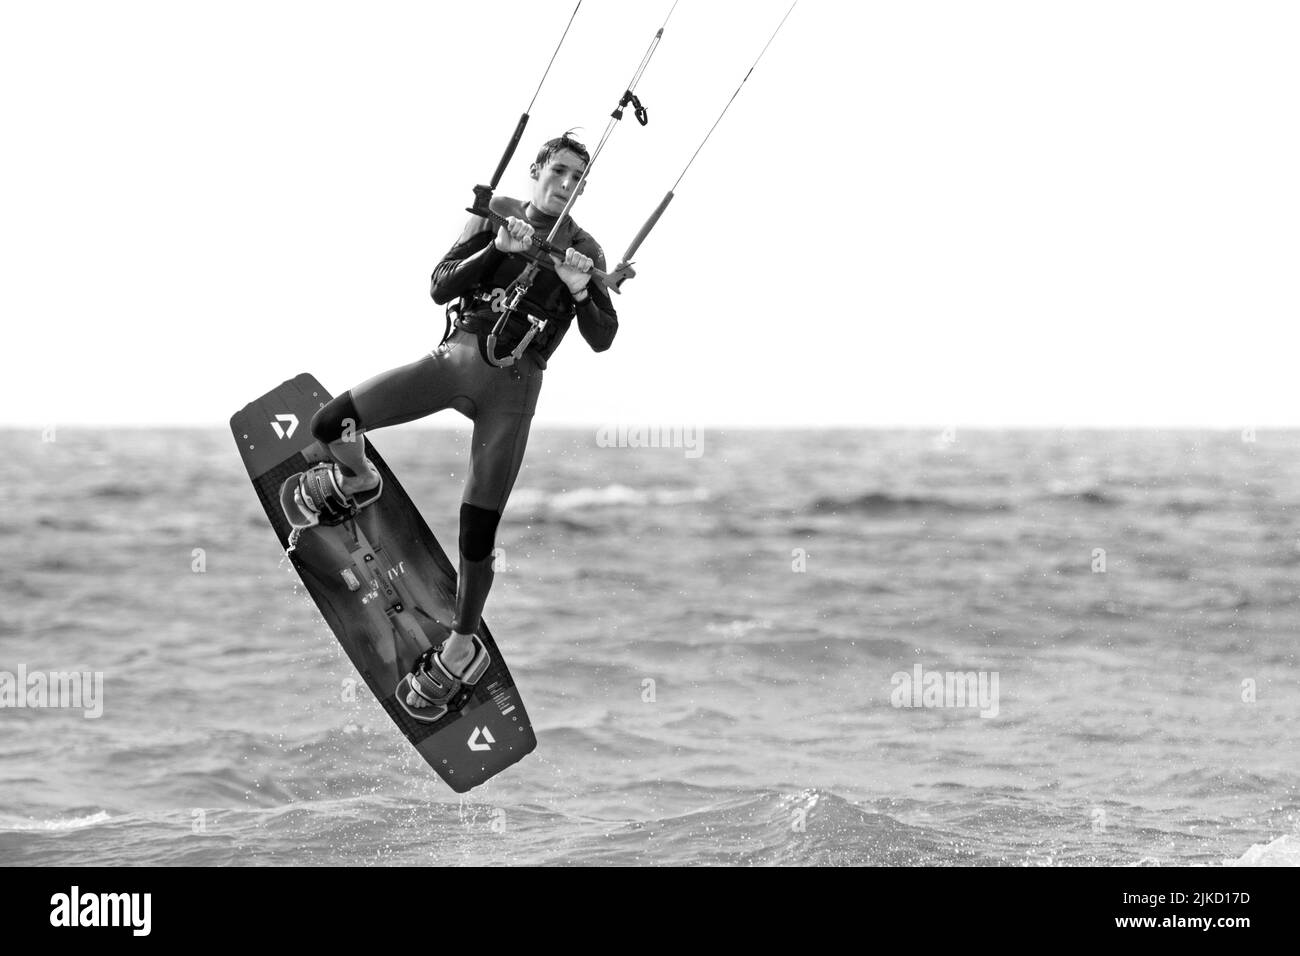 Kitesurfen zeigt Kiteboarder / Kitesurfer an einem windigen Tag auf einem Twintip Board Springen an der Nordsee Stockfoto